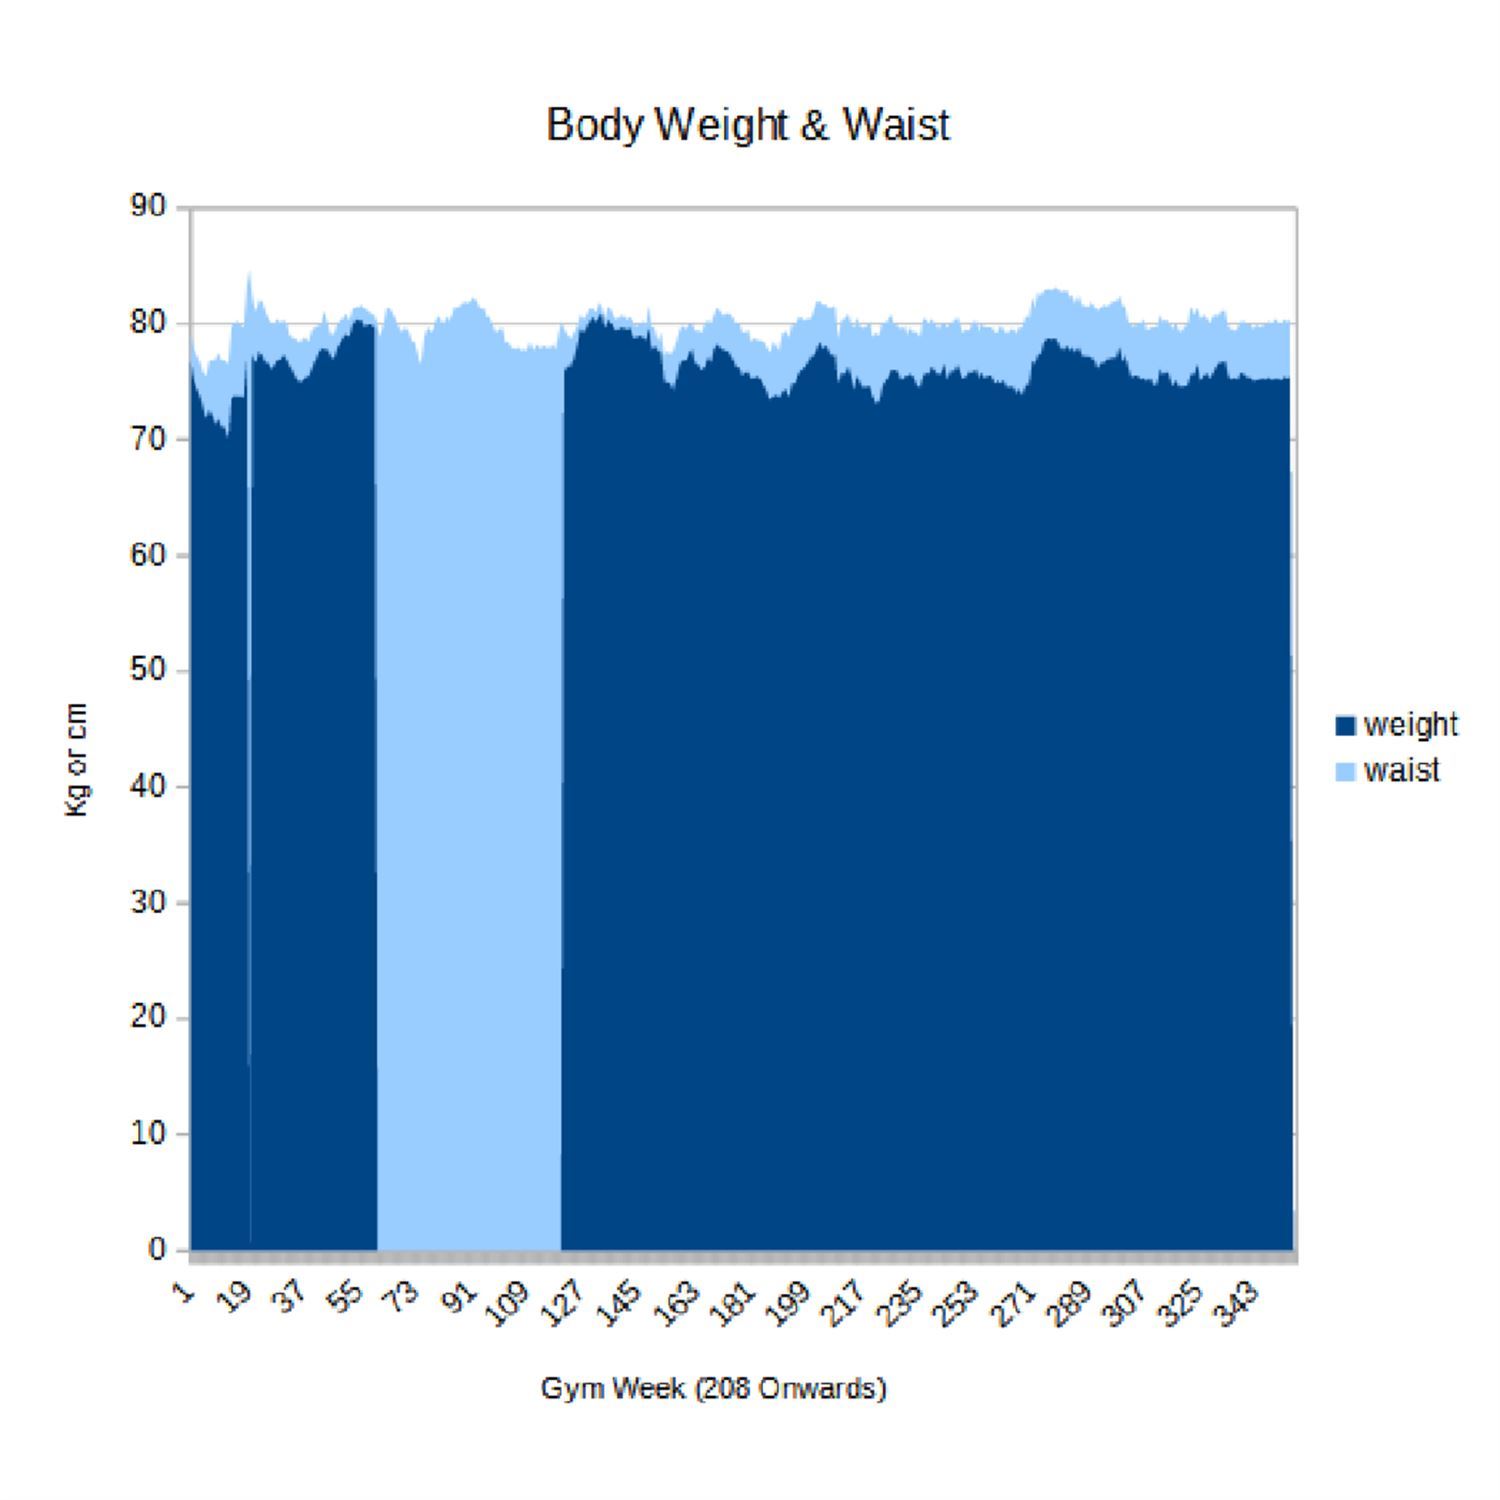 Weight & waist data